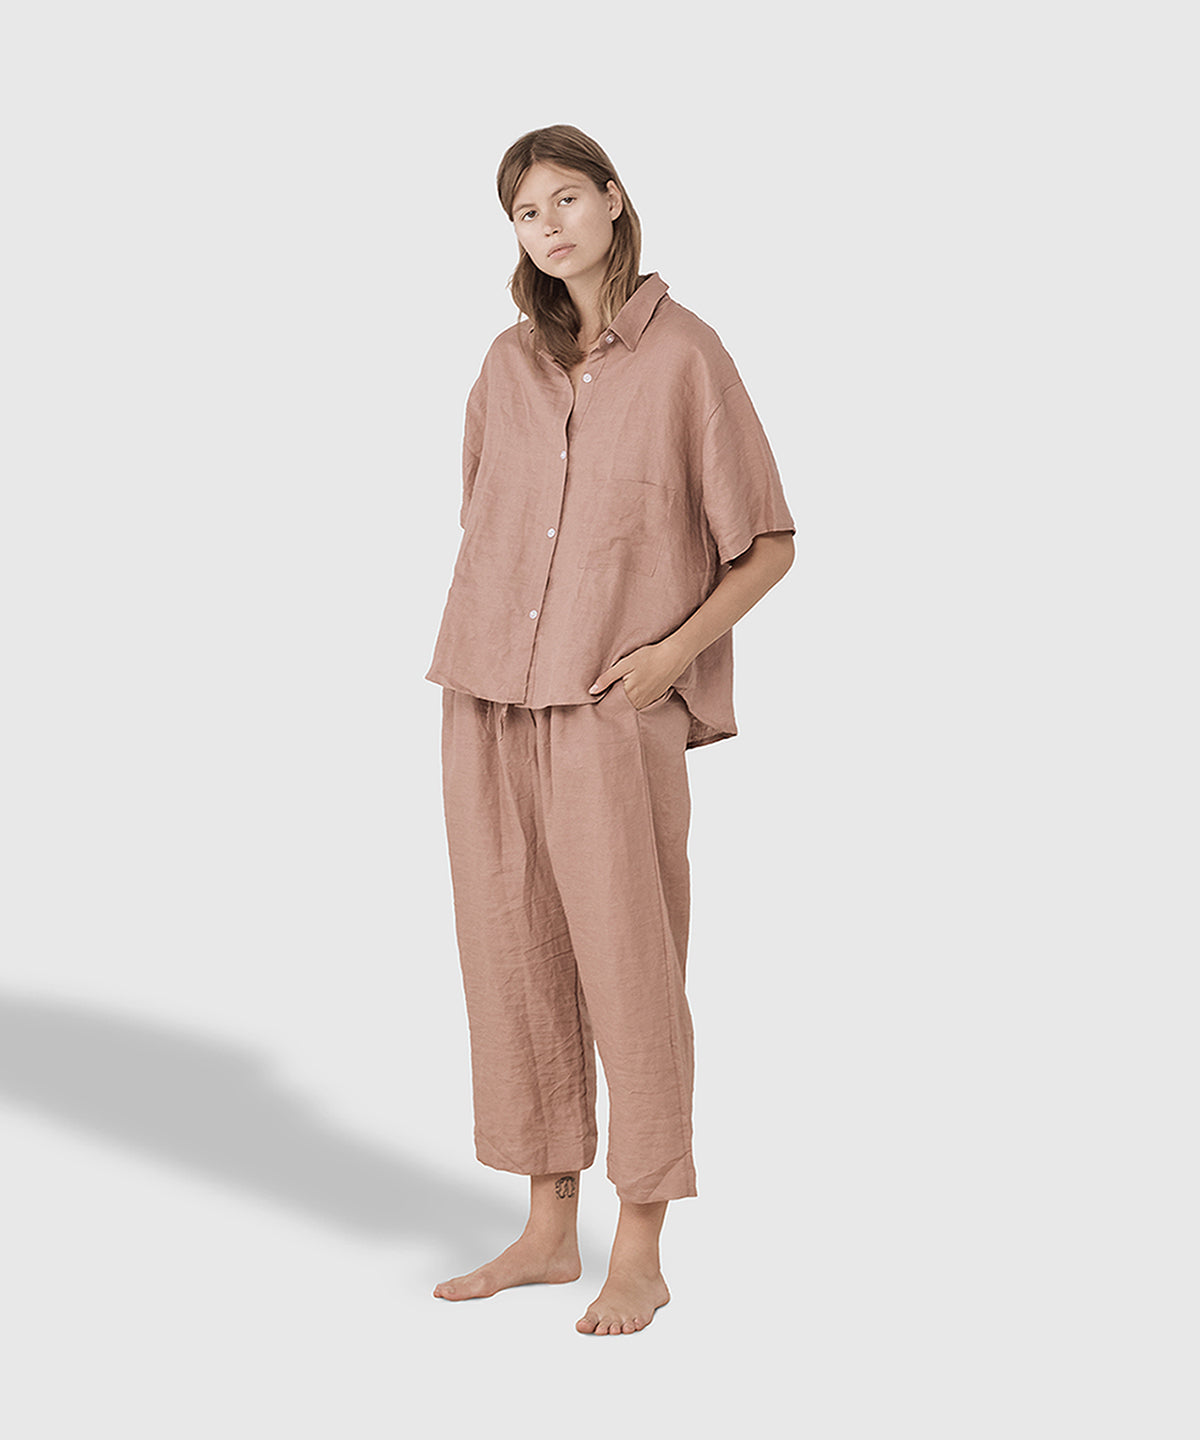 Stonewashed Linen Pajama Pant Set – Smoke Pink